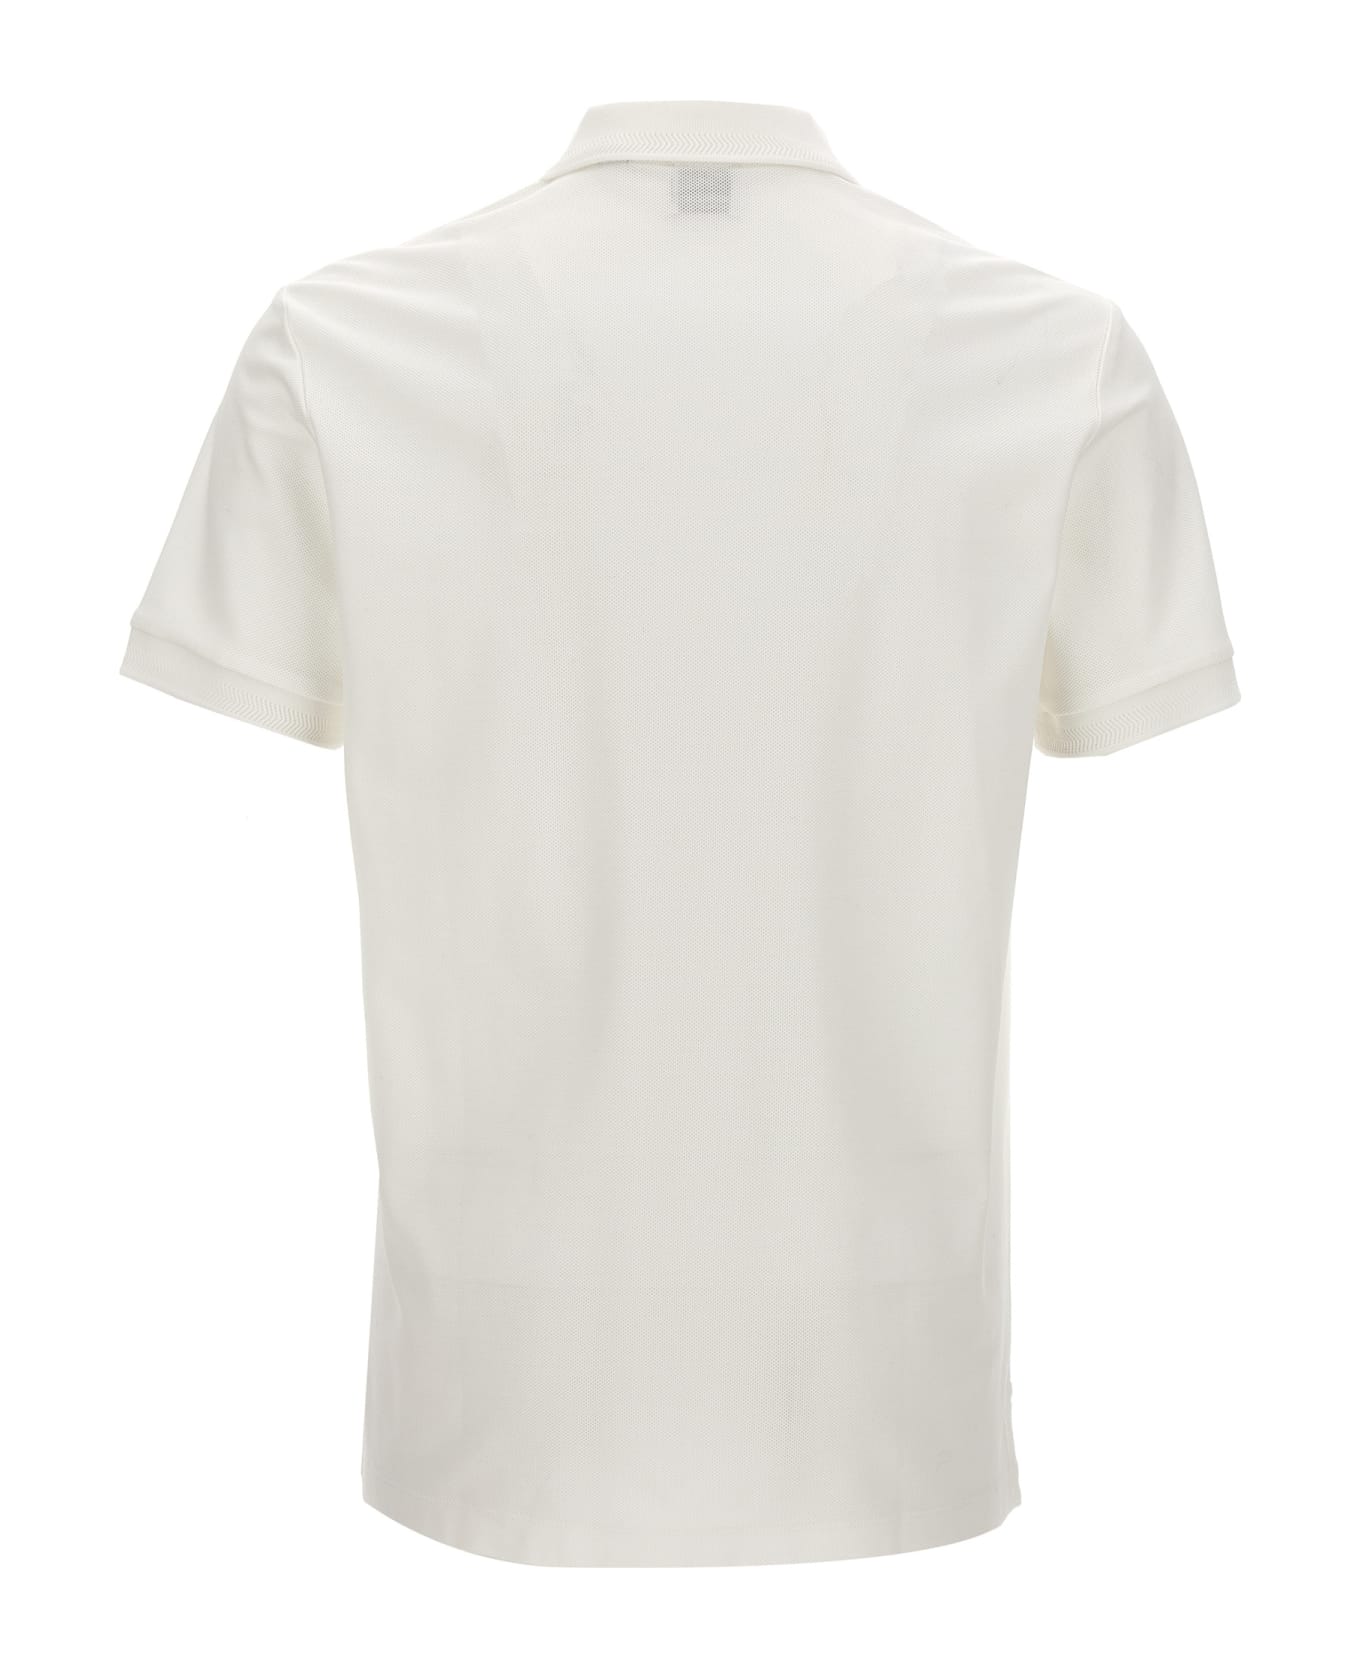 Burberry 'eddie' Polo Shirt - White ポロシャツ